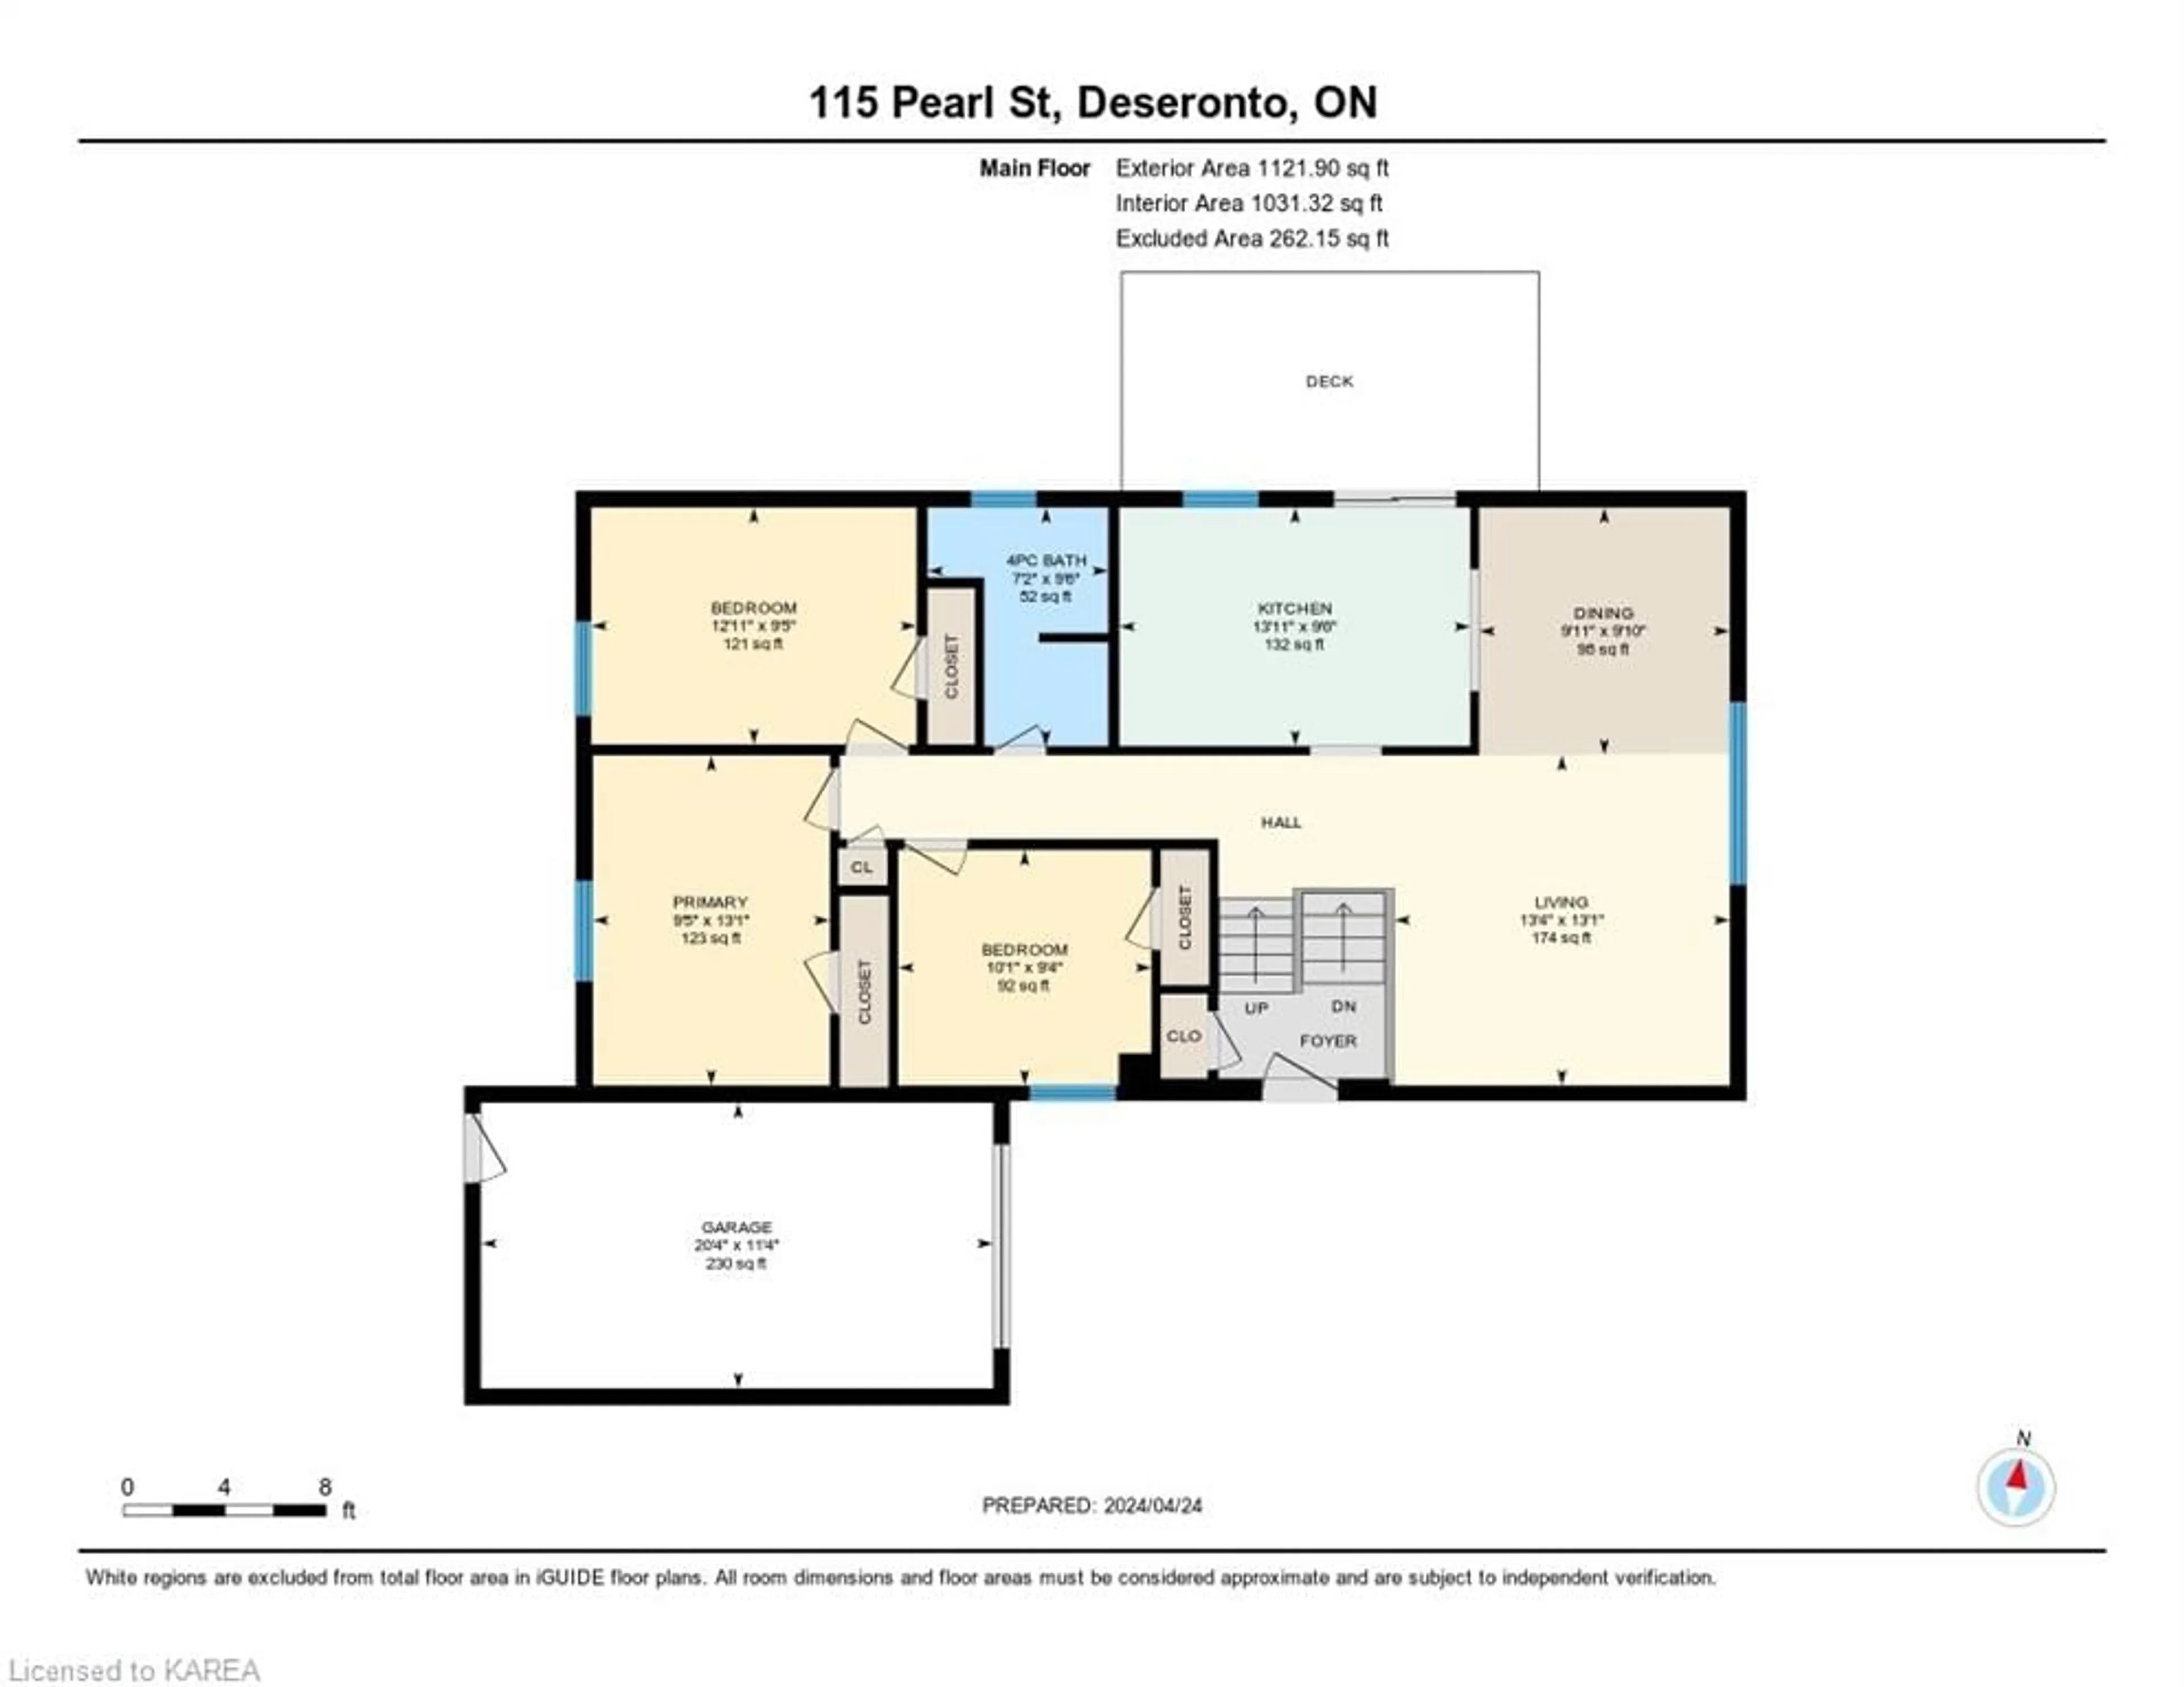 Floor plan for 115 Pearl St St, Deseronto Ontario K0K 1X0